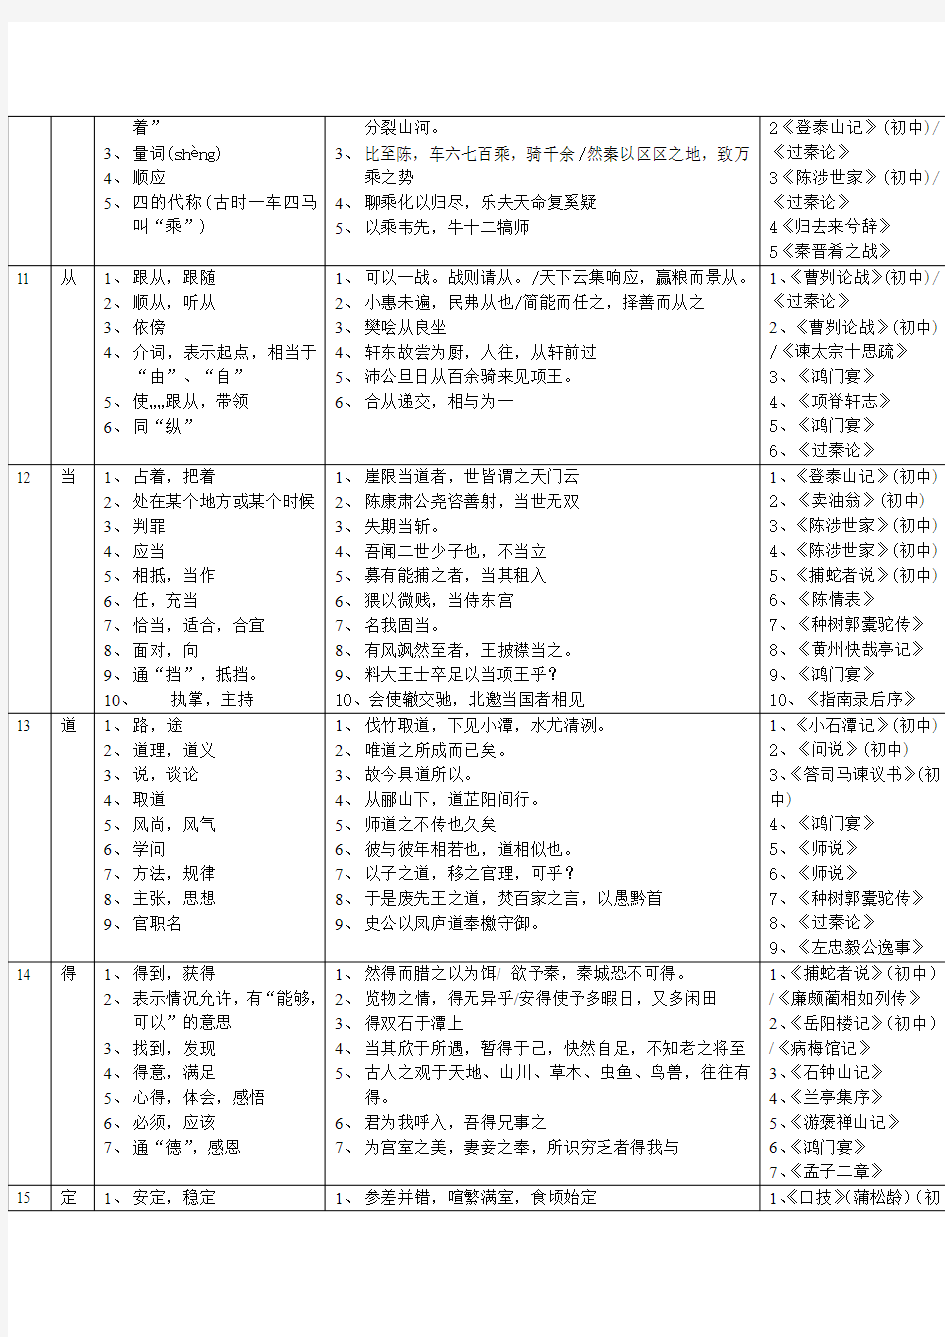 初中语文140个常见文言实词解释及例句